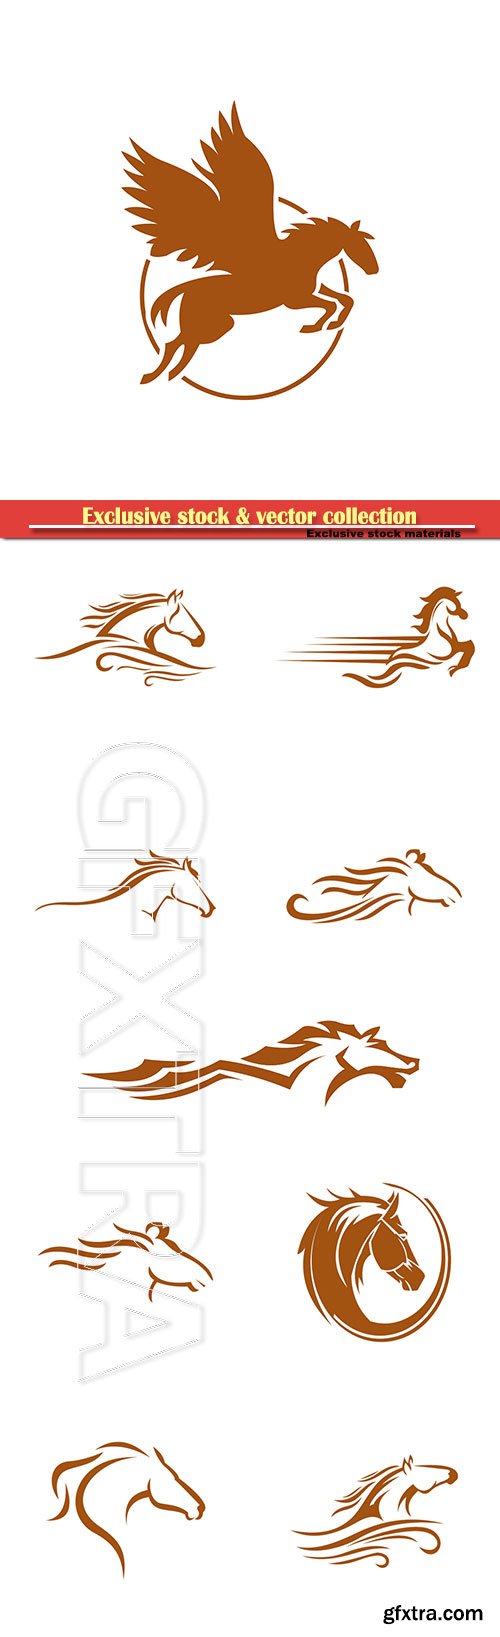 Horse logo vector illustration